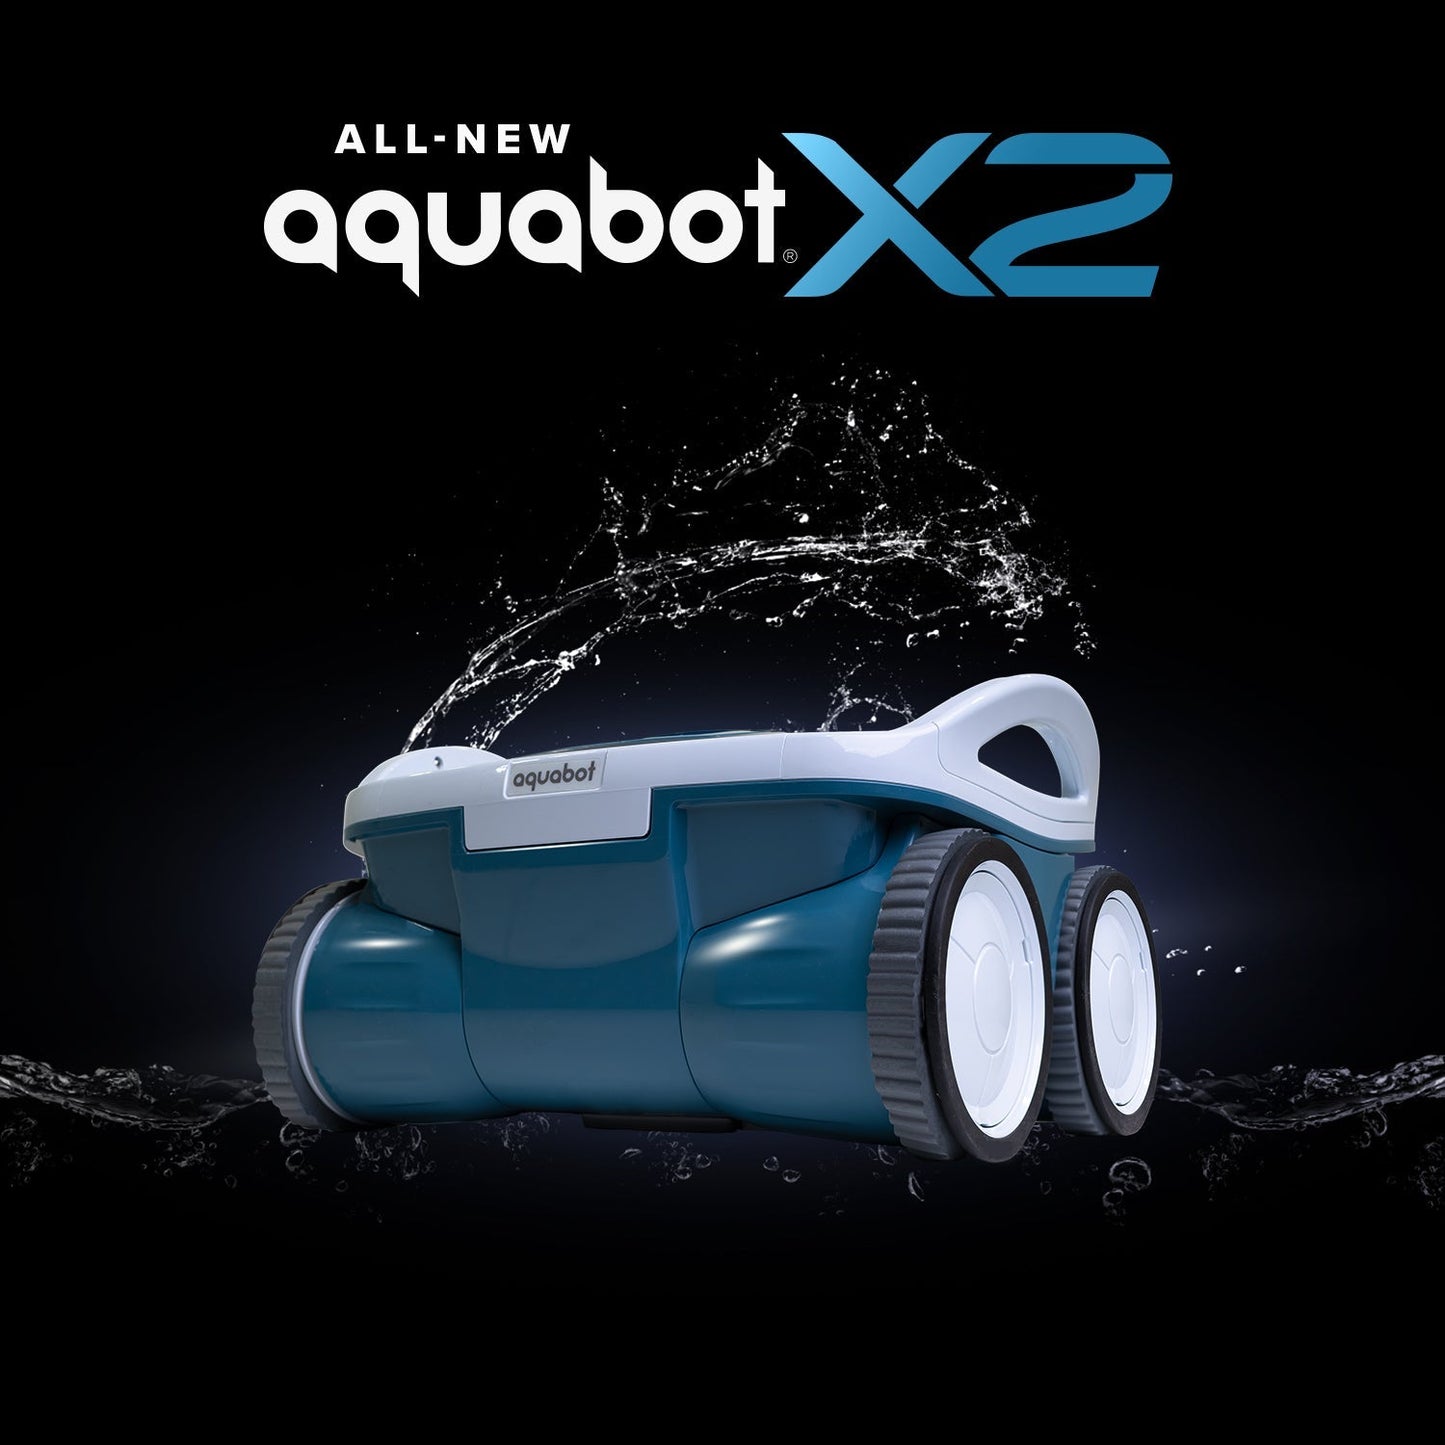 Aquabot X2